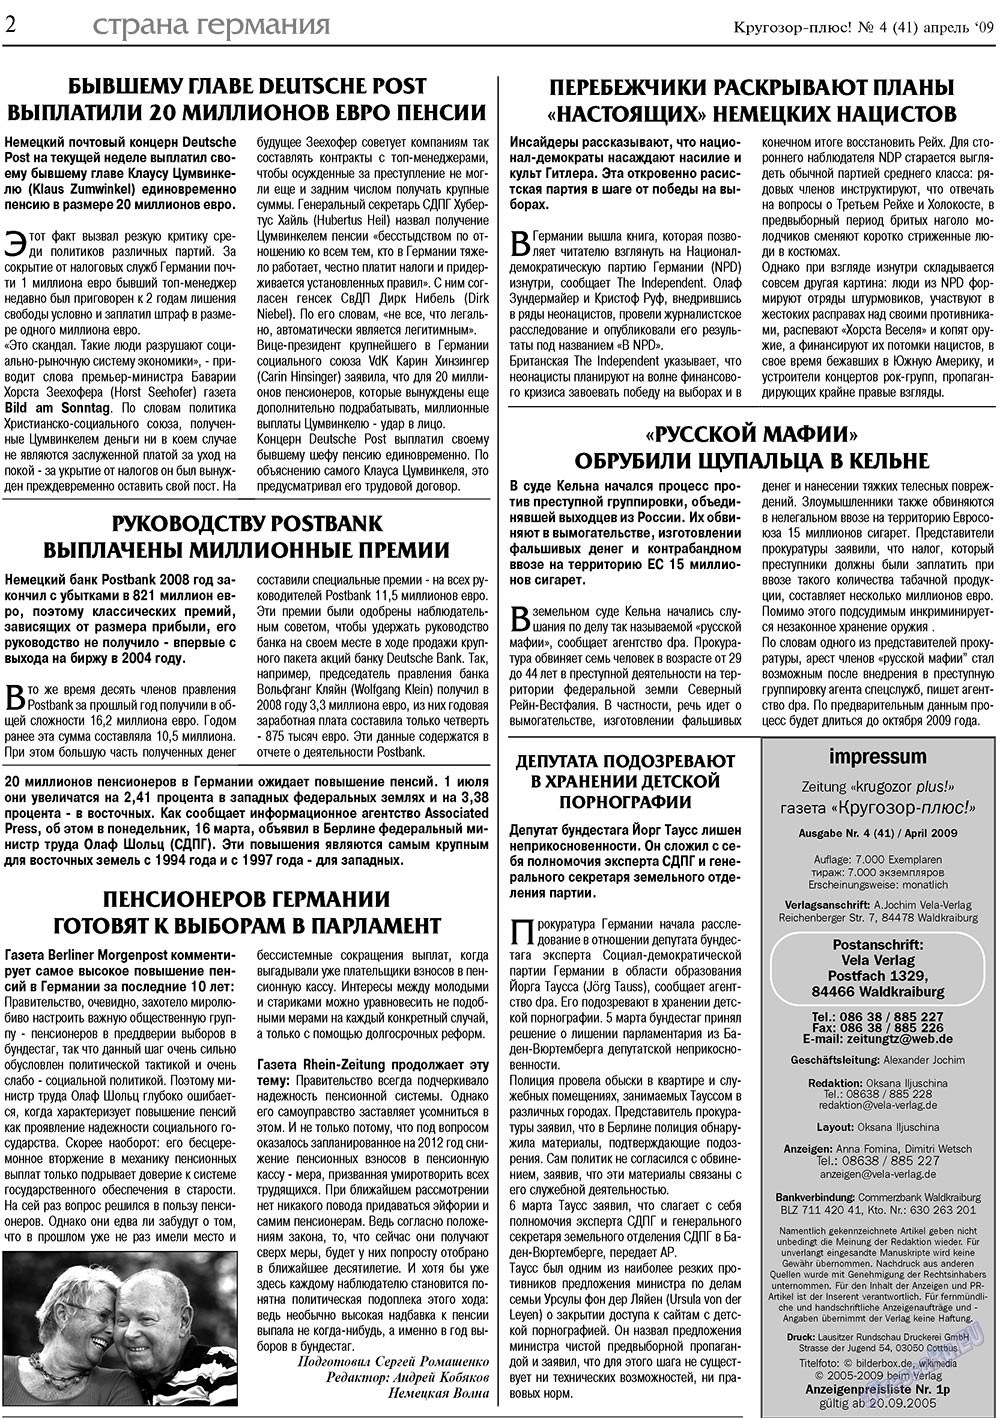 Кругозор плюс!, газета. 2009 №4 стр.2